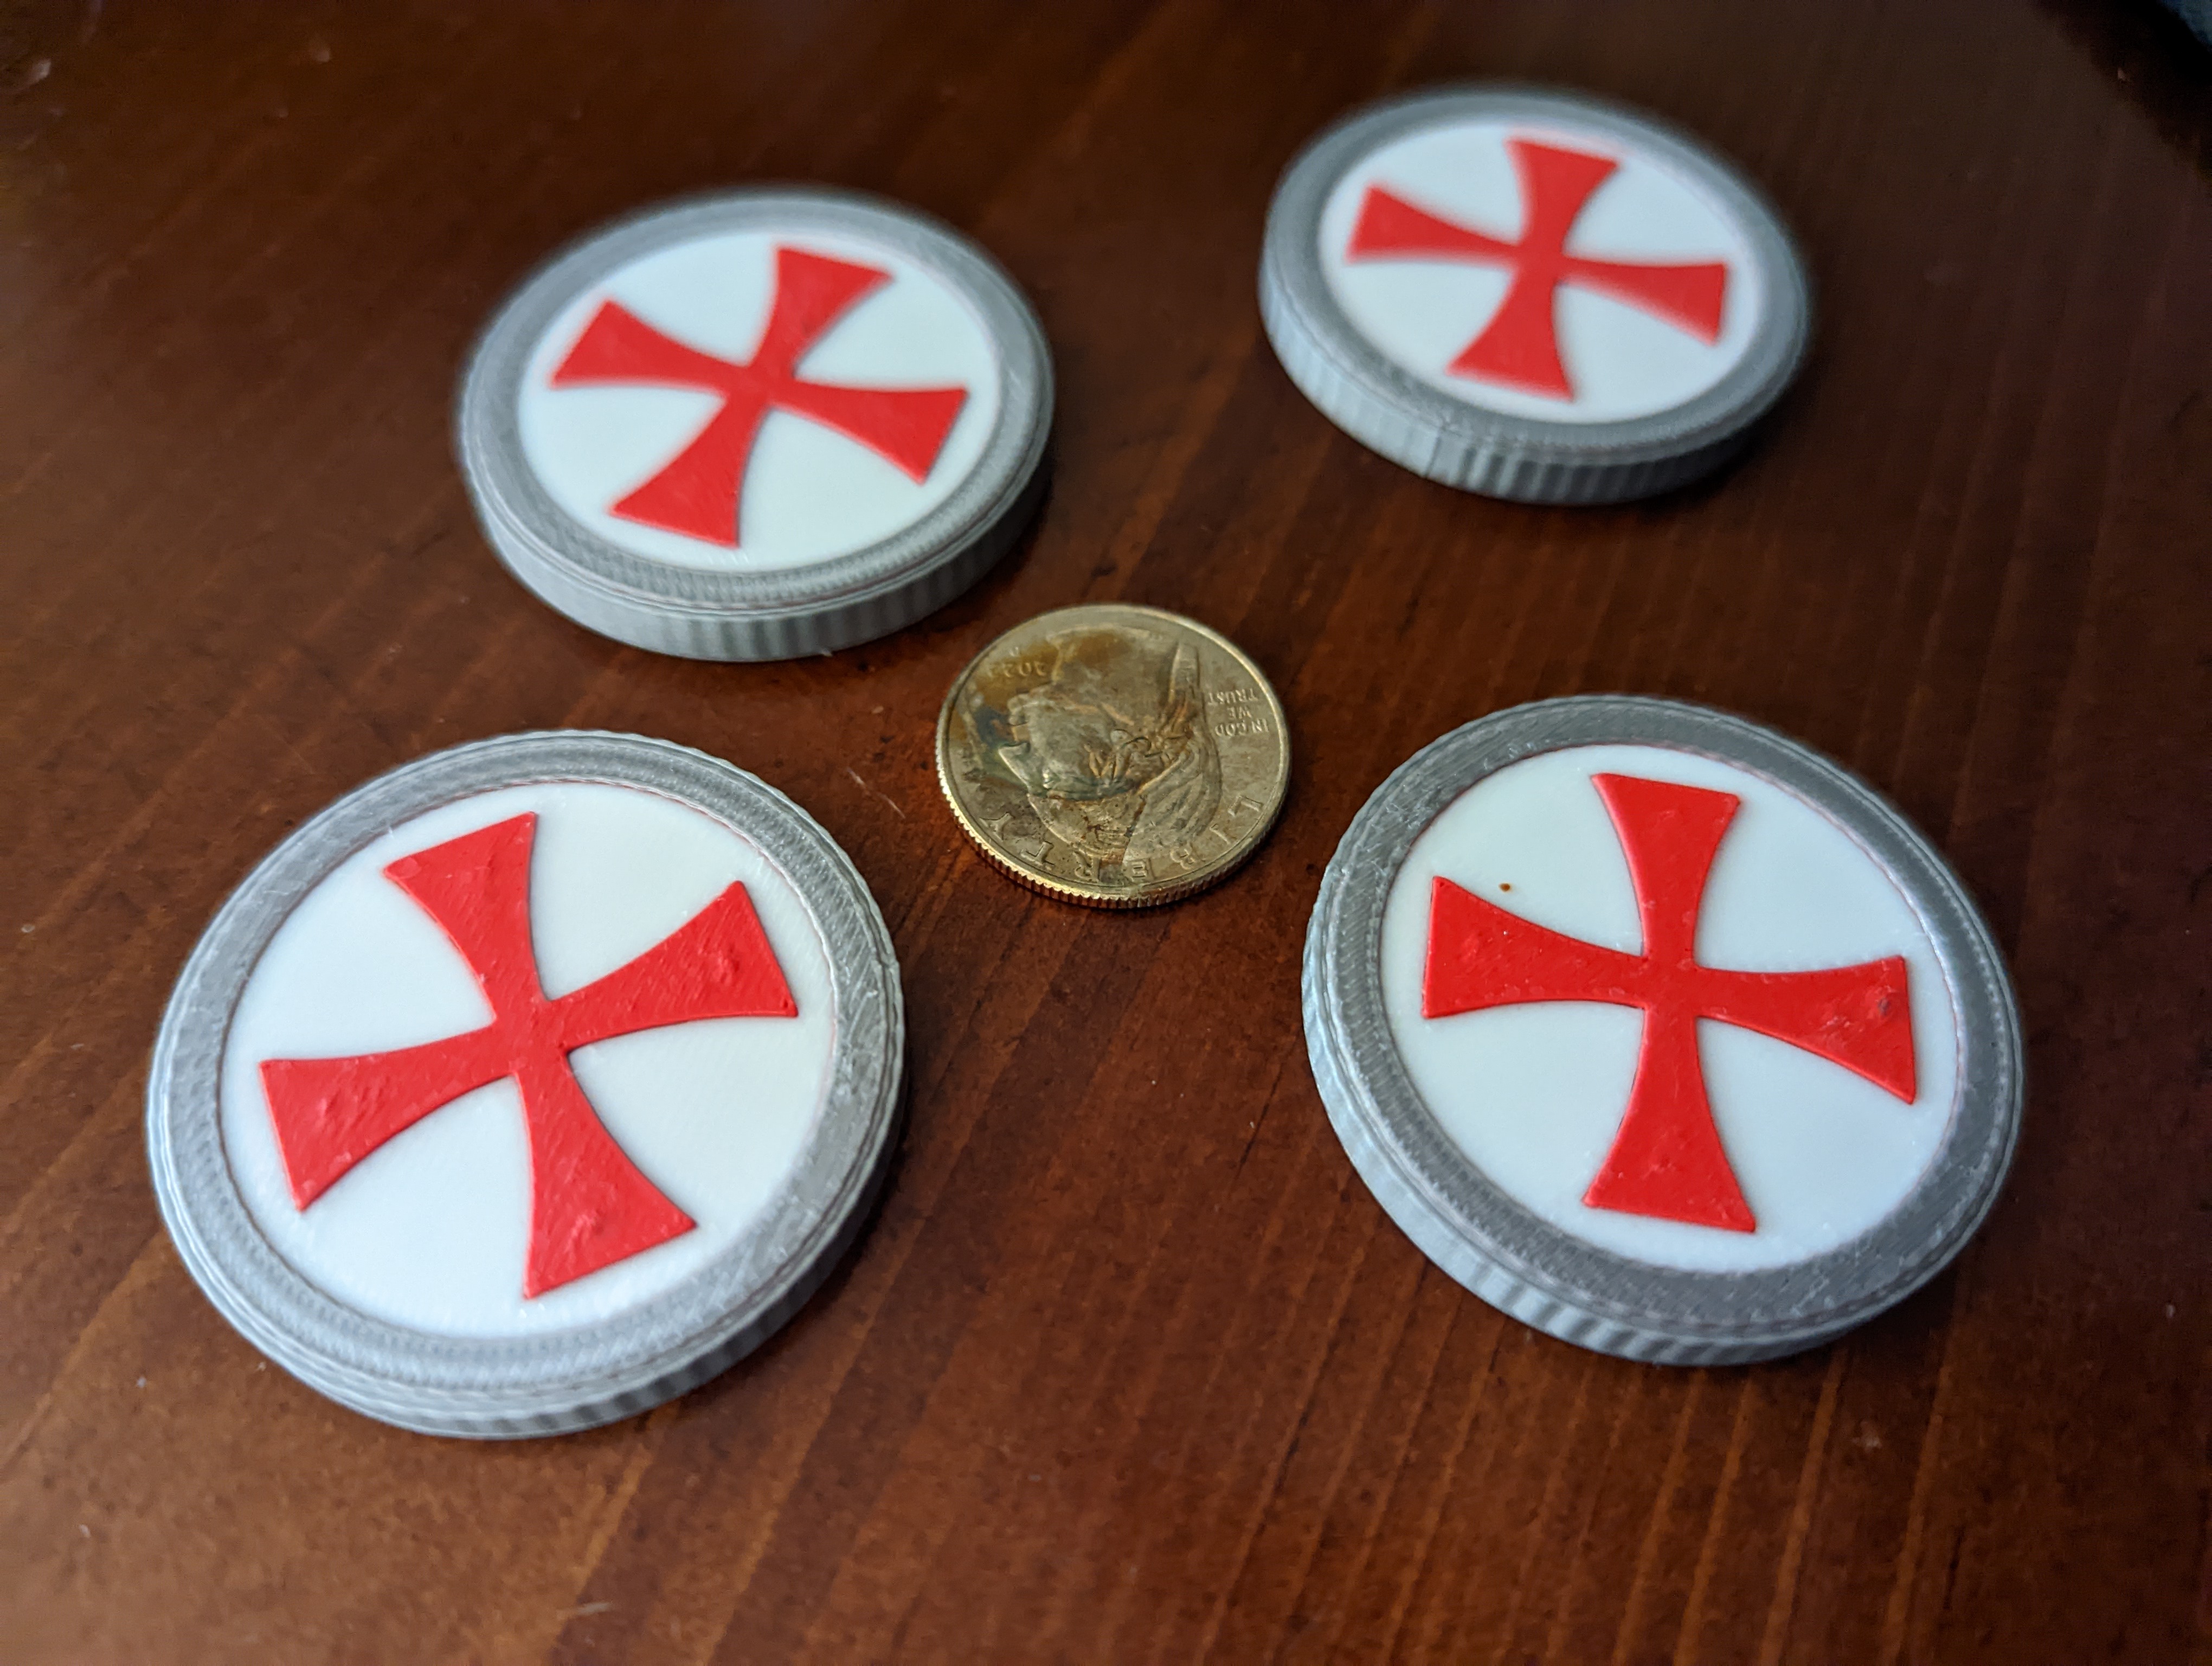 Simple Knights Templar medallion